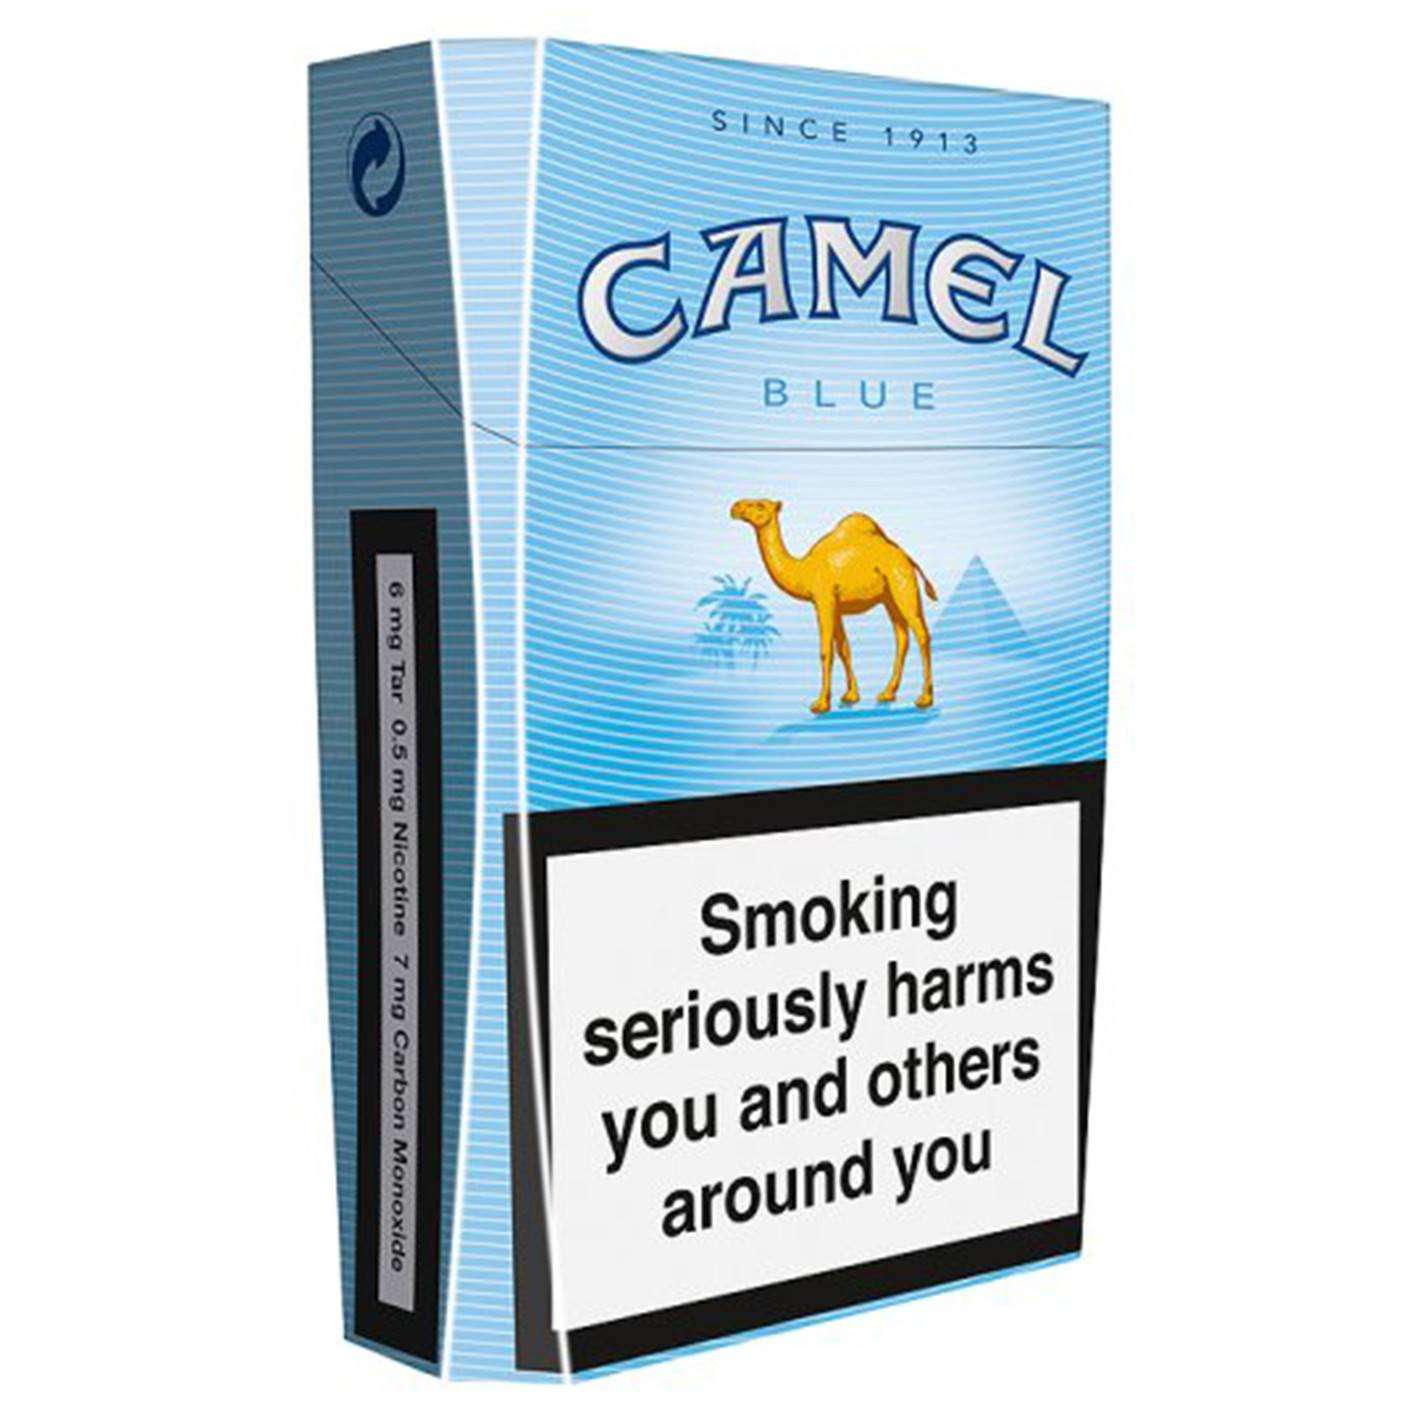 Camels Cigarette Delivery 24 Hour Camel Blue Cigarette Delivery Booze Up